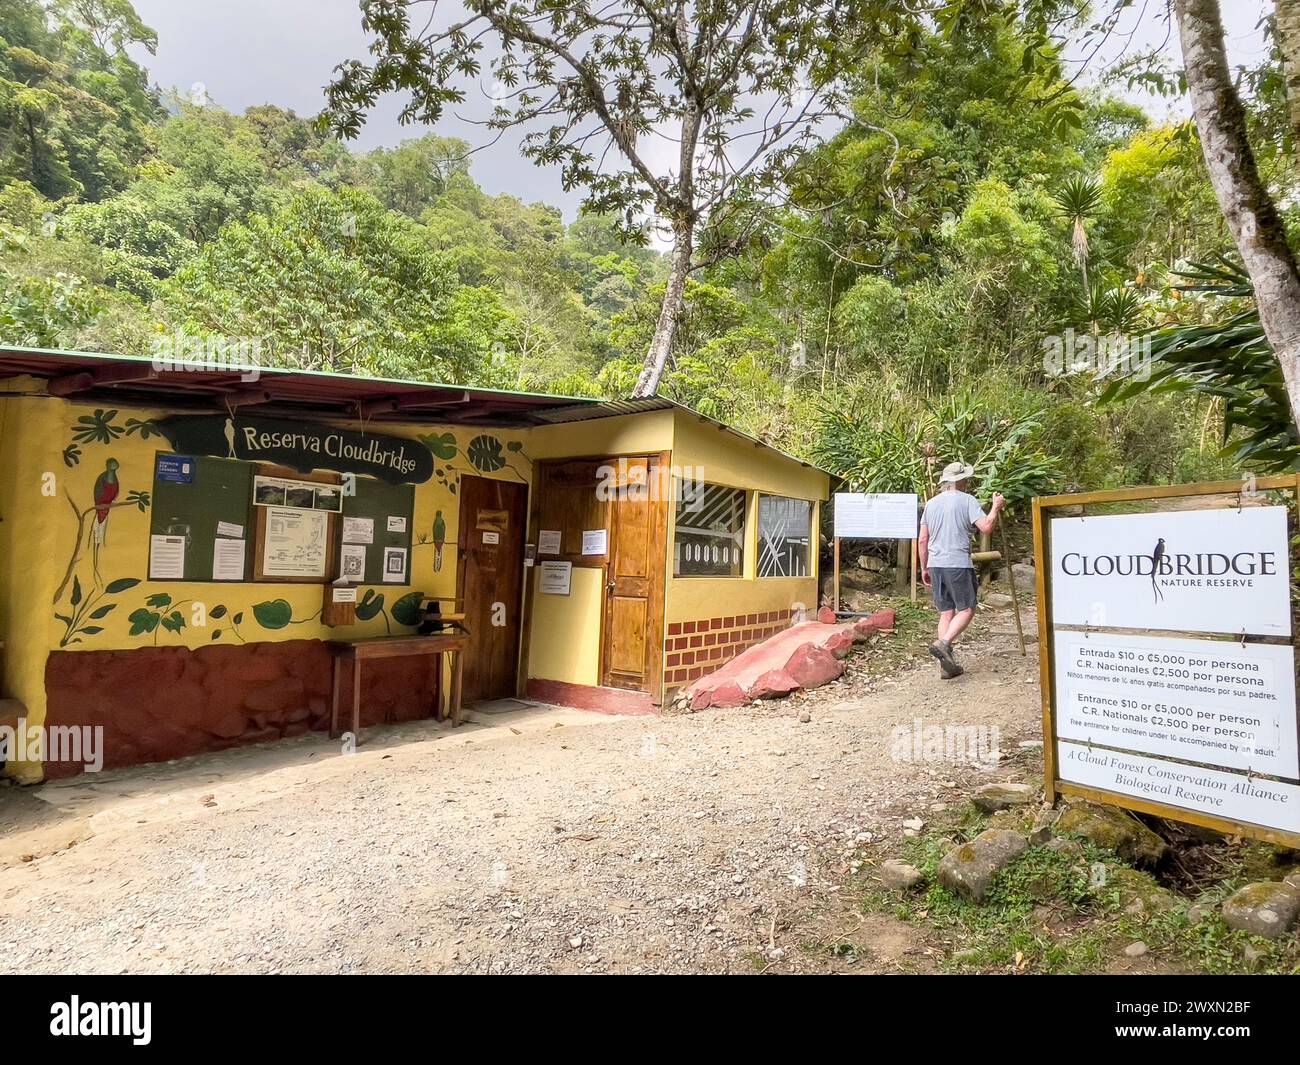 Randonneur à l'entrée de la réserve Cloudbridge, adjacente au cerro chirripo dans les montagnes Talamanca, près de Rivas, Costa Rica Banque D'Images